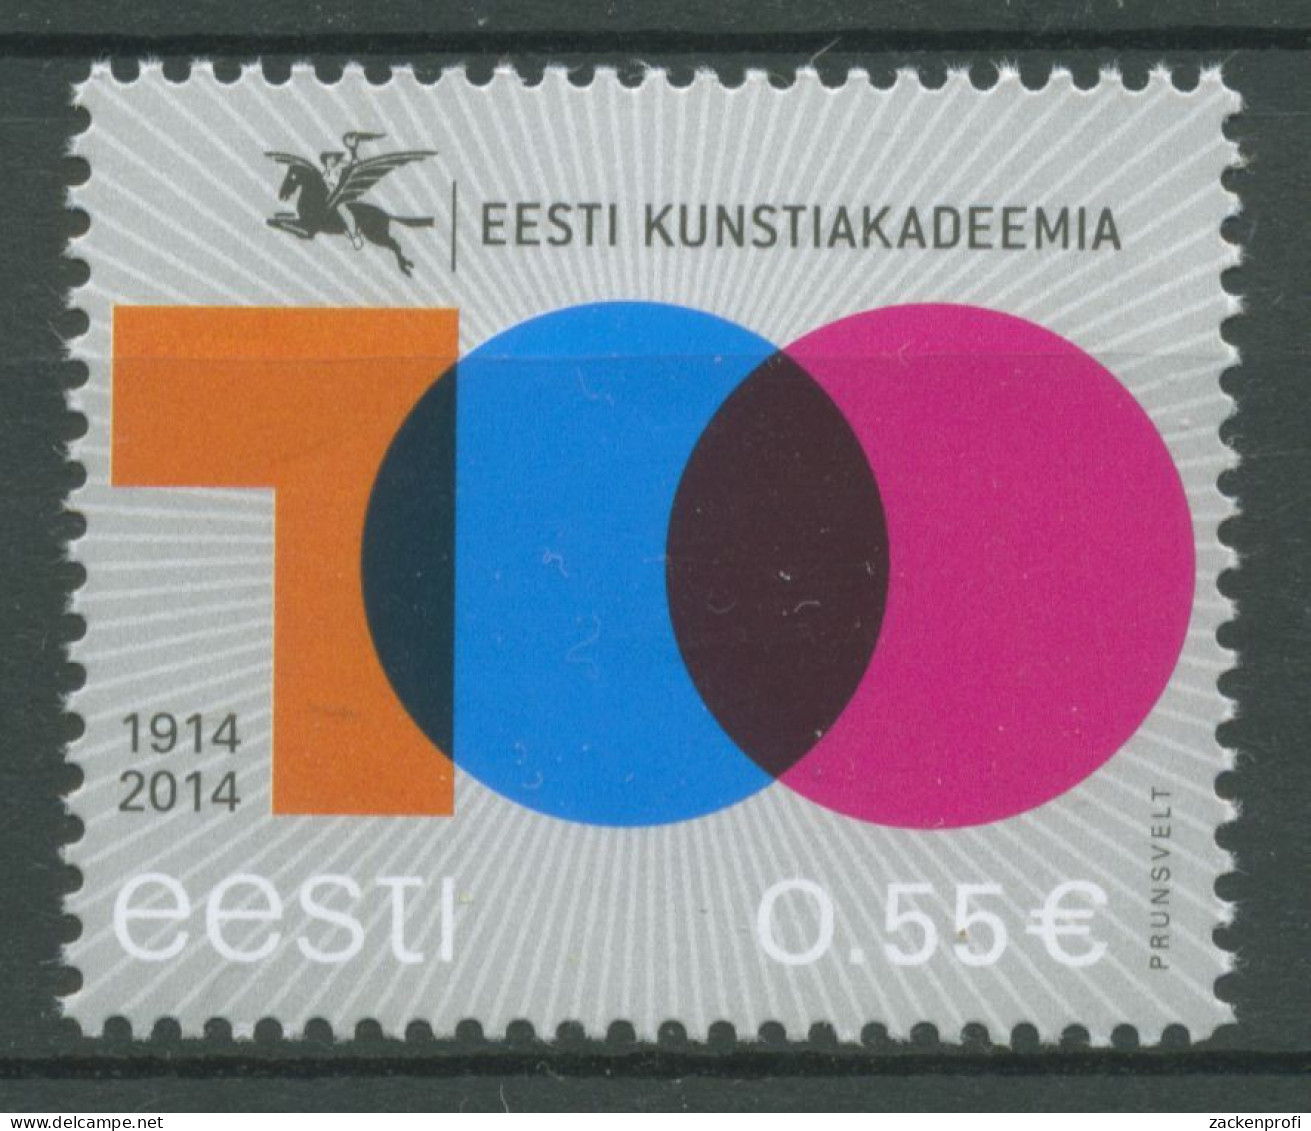 Estland 2014 Kunstakademie 804 Postfrisch - Estland